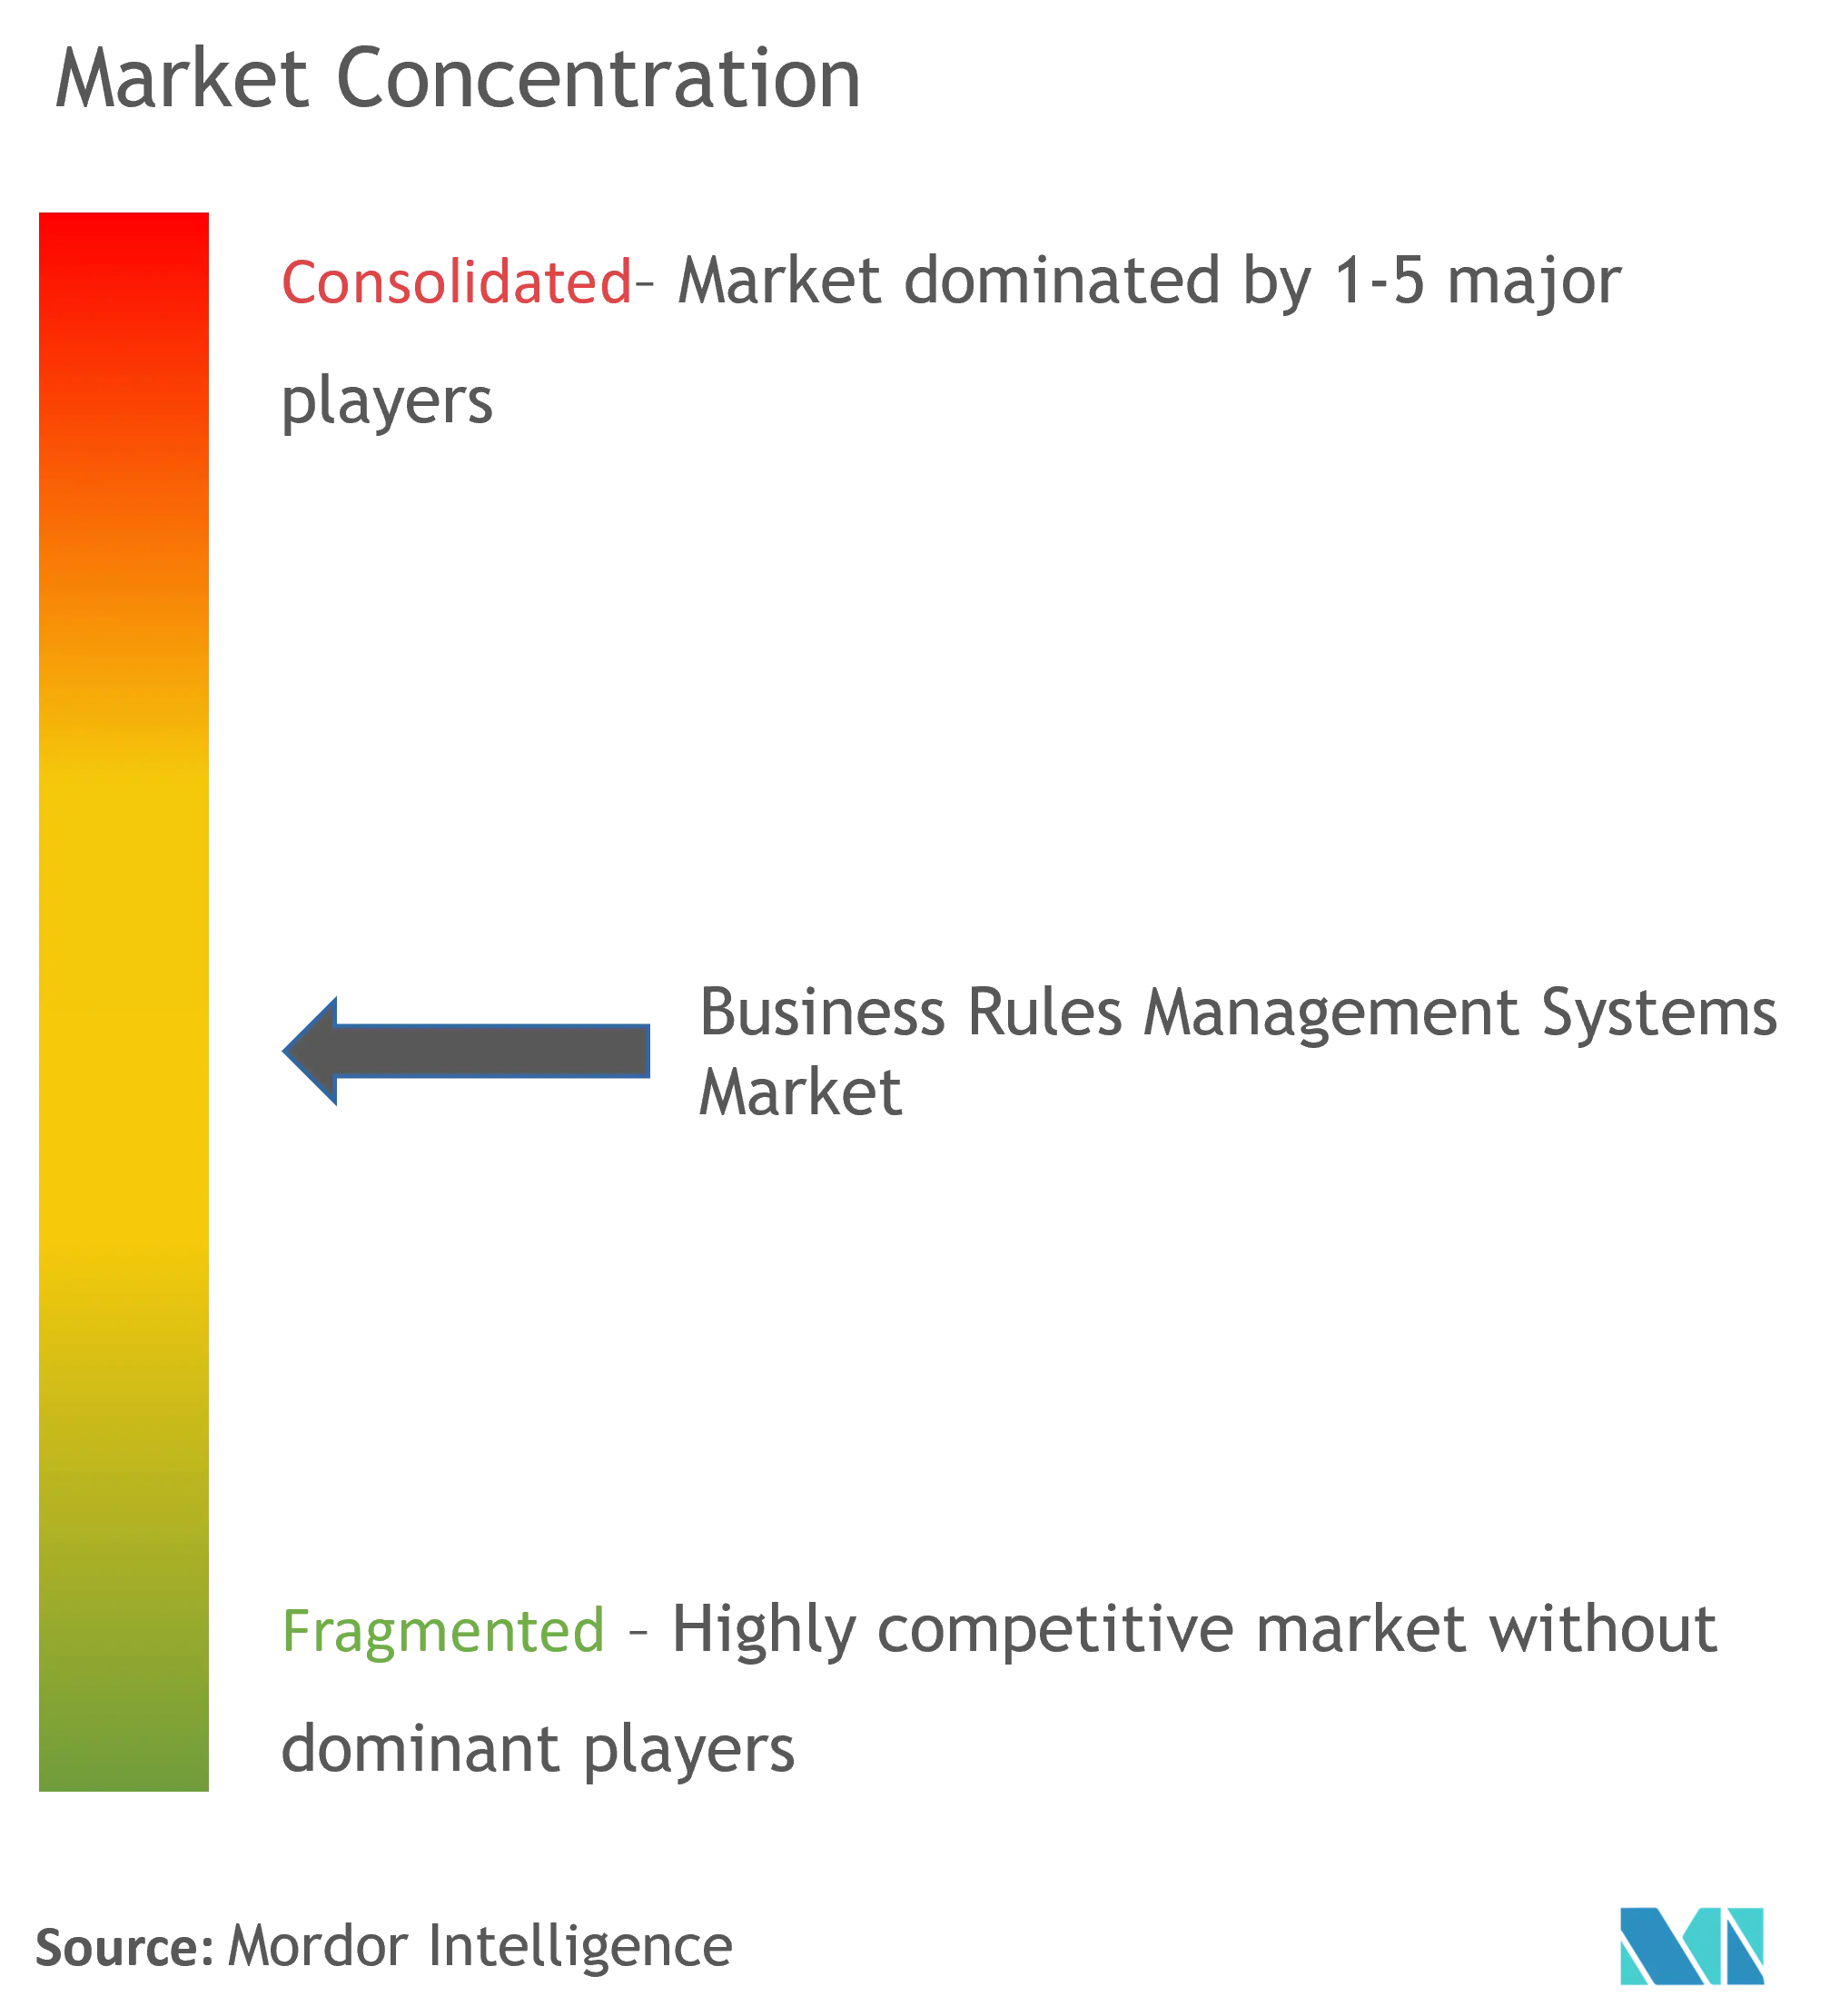 Concentração de mercado de sistemas de gerenciamento de regras de negócios